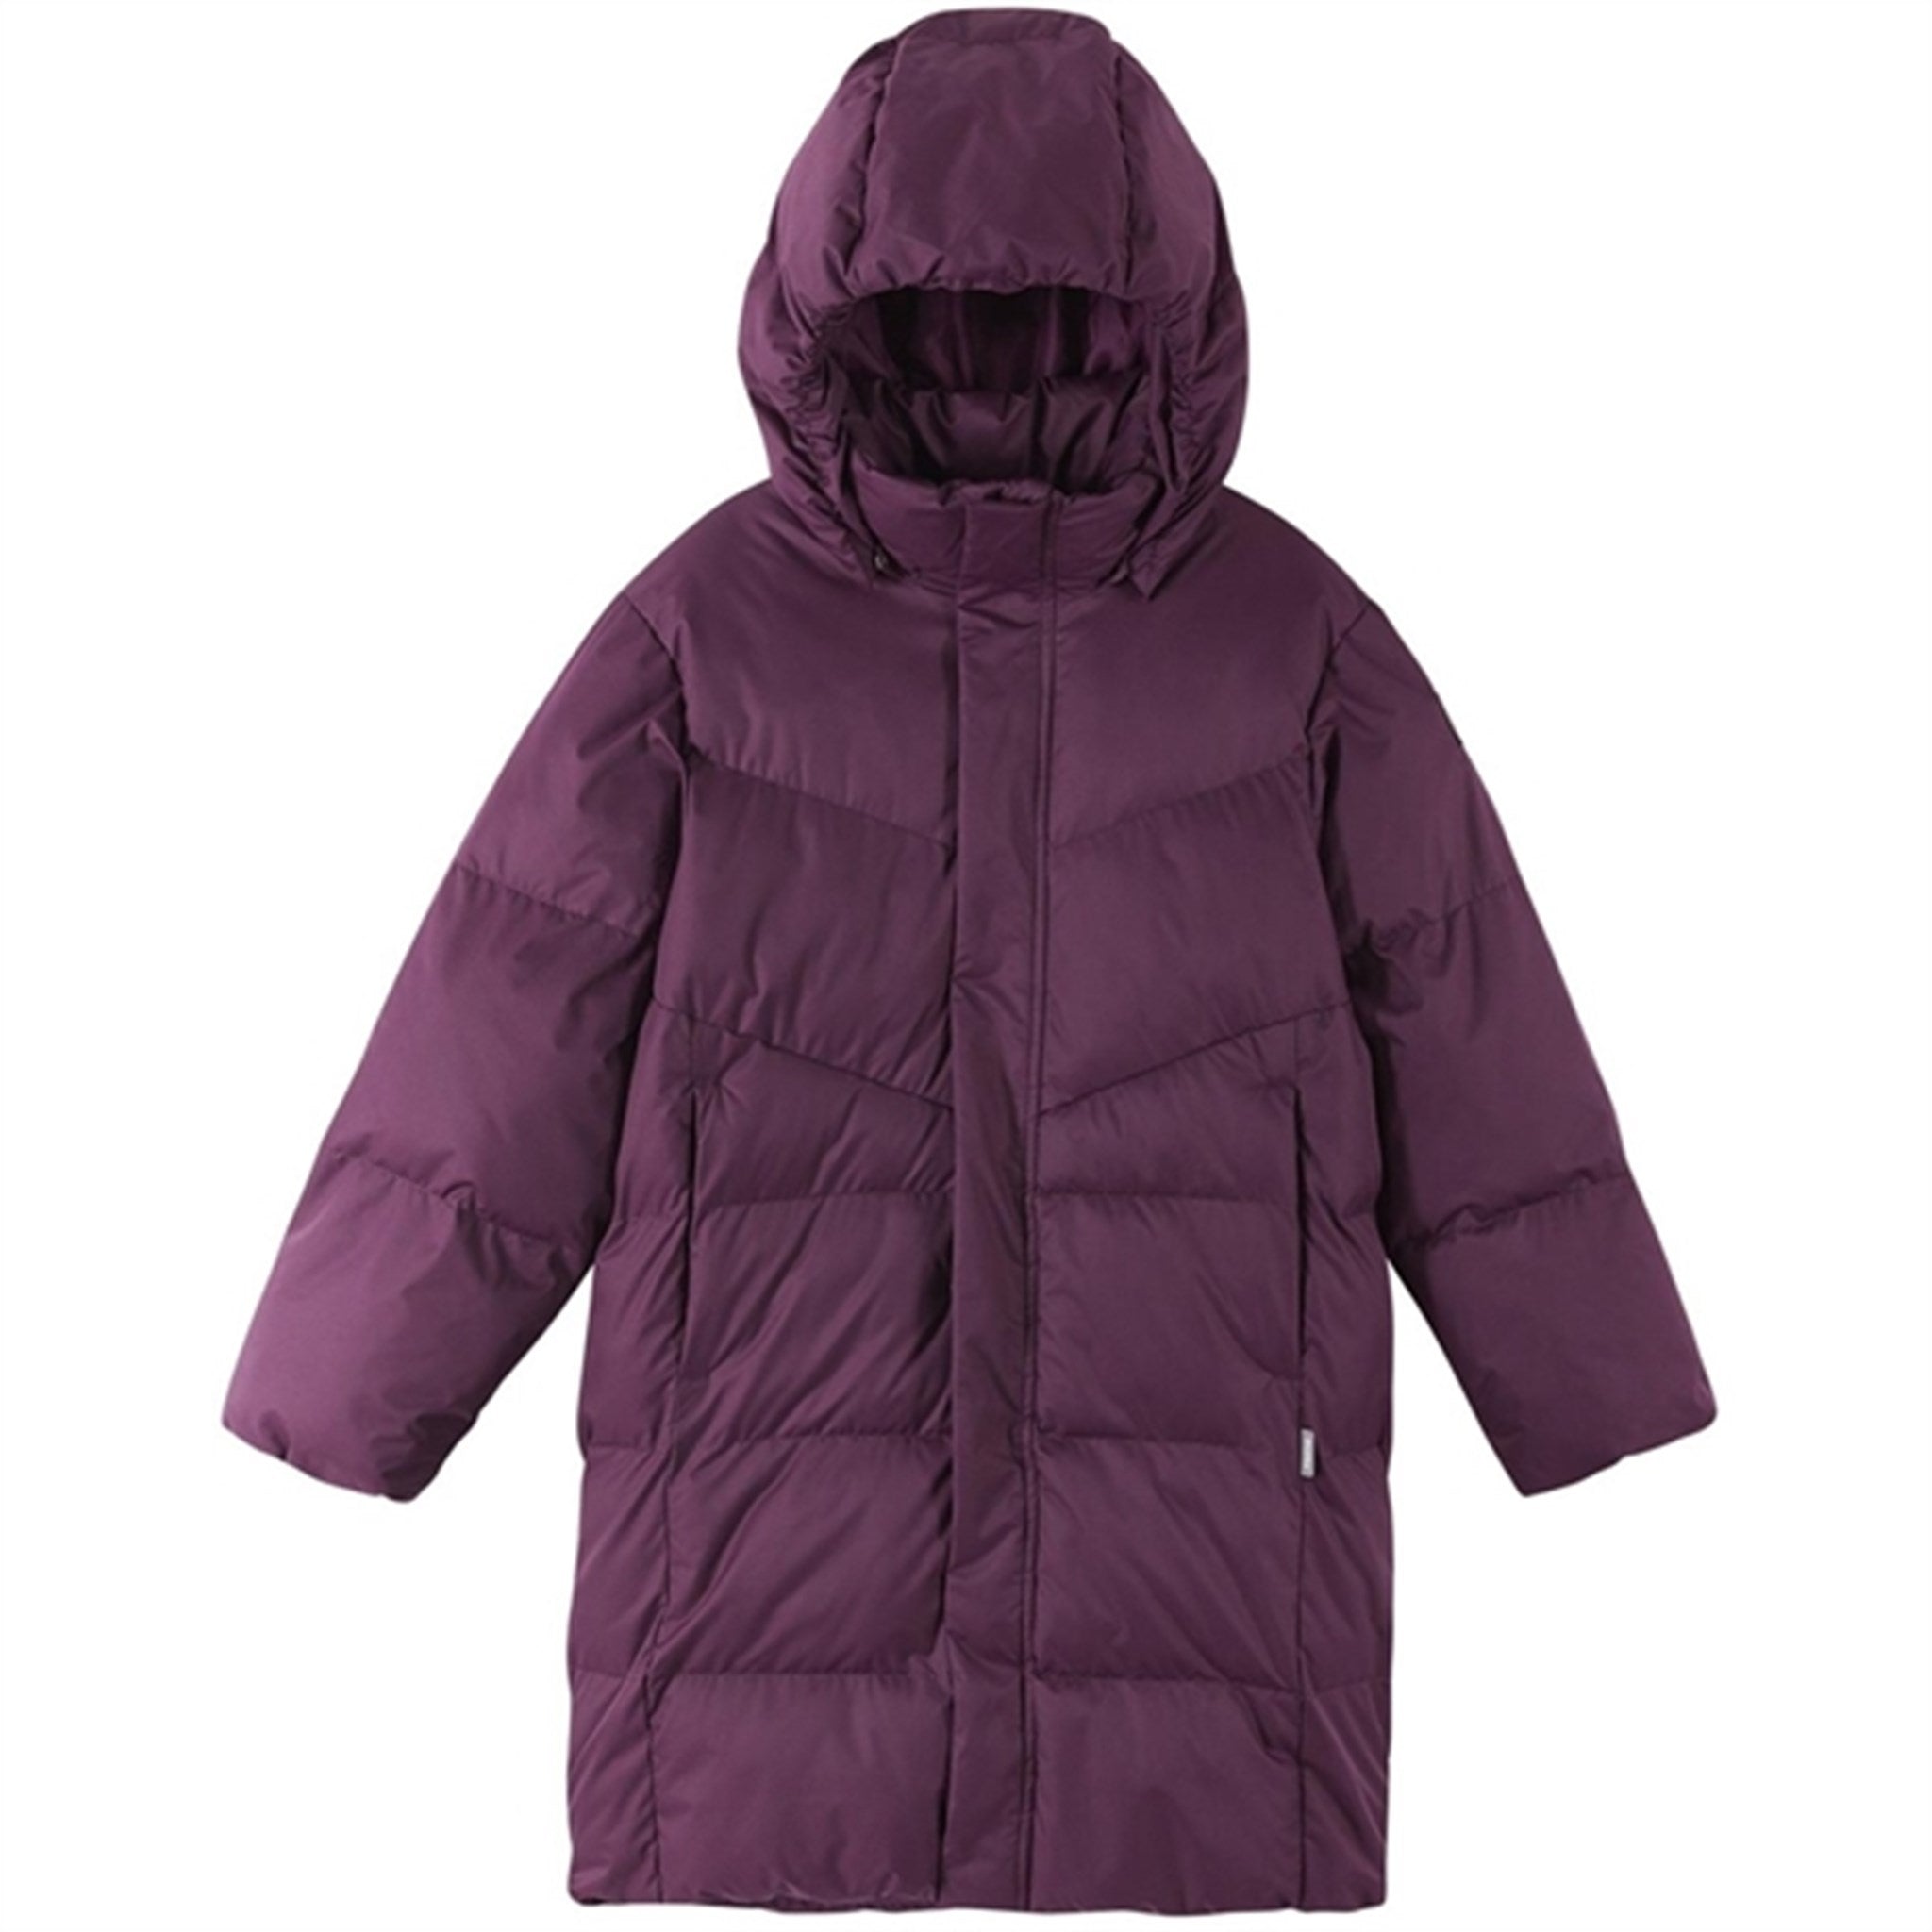 Reima Winter Jacket Vaanila Deep purple